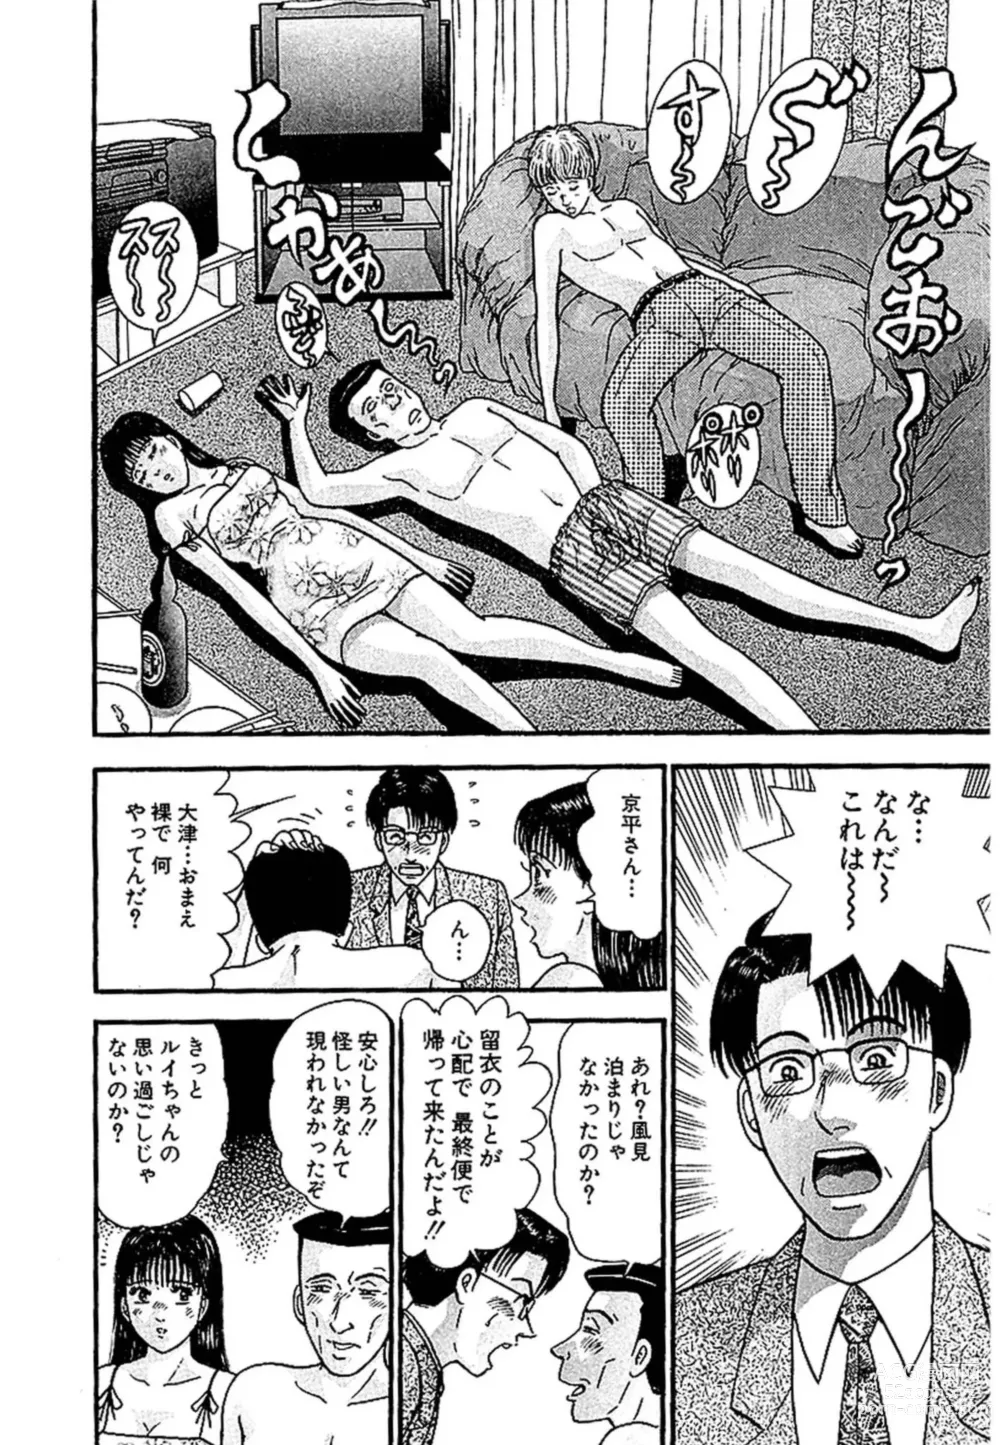 Page 197 of manga Sekkusuresu Shinsō-ban 1